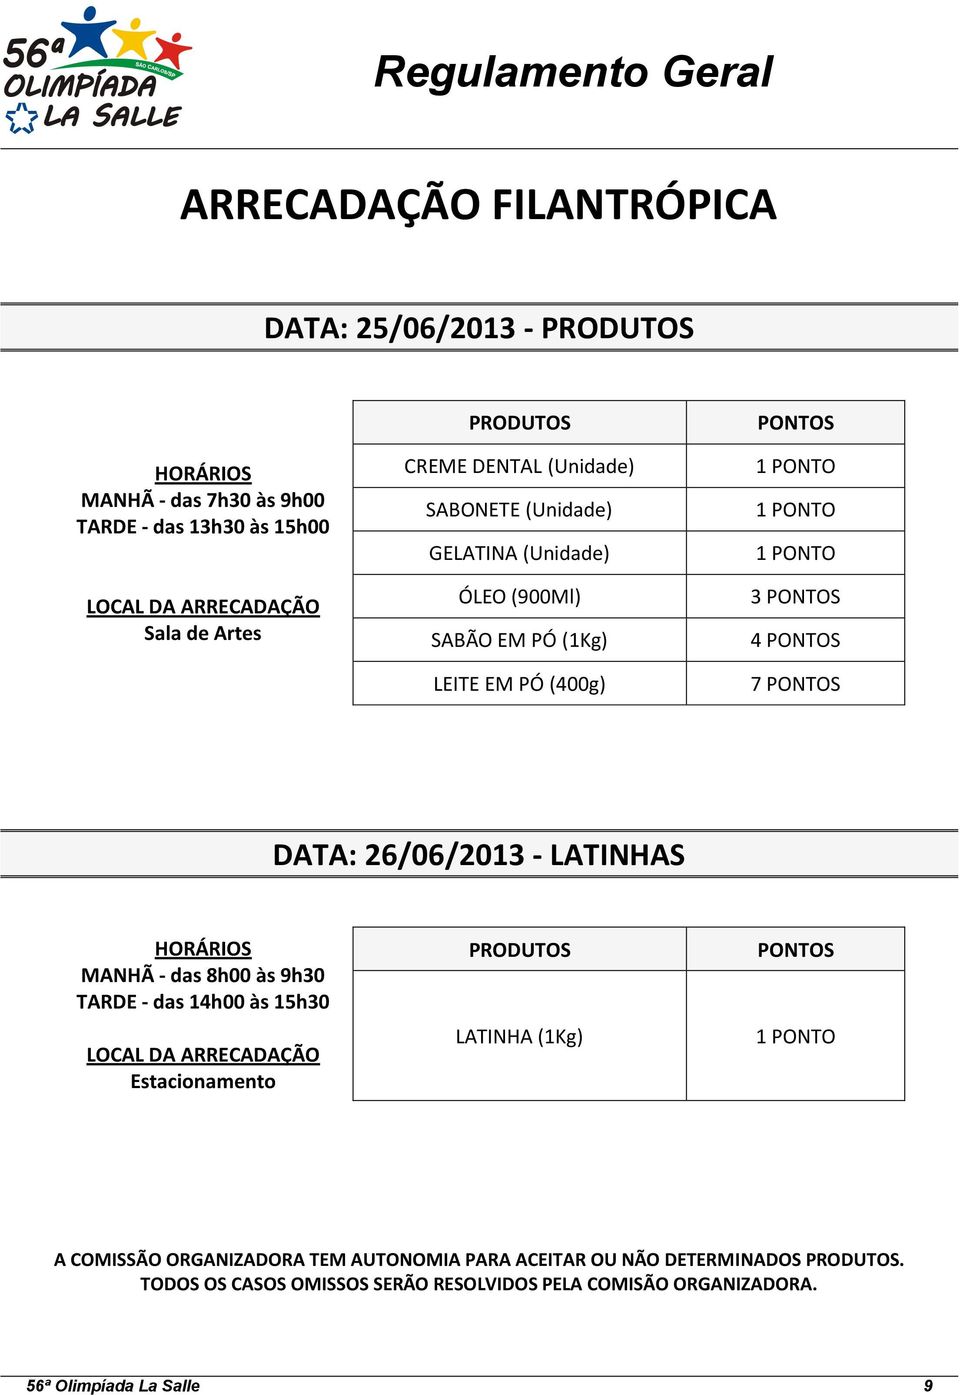 DATA: 26/06/2013 - LATINHAS HORÁRIOS MANHÃ - das 8h00 às 9h30 TARDE - das 14h00 às 15h30 LOCAL DA ARRECADAÇÃO Estacionamento PRODUTOS LATINHA (1Kg) PONTOS 1 PONTO A